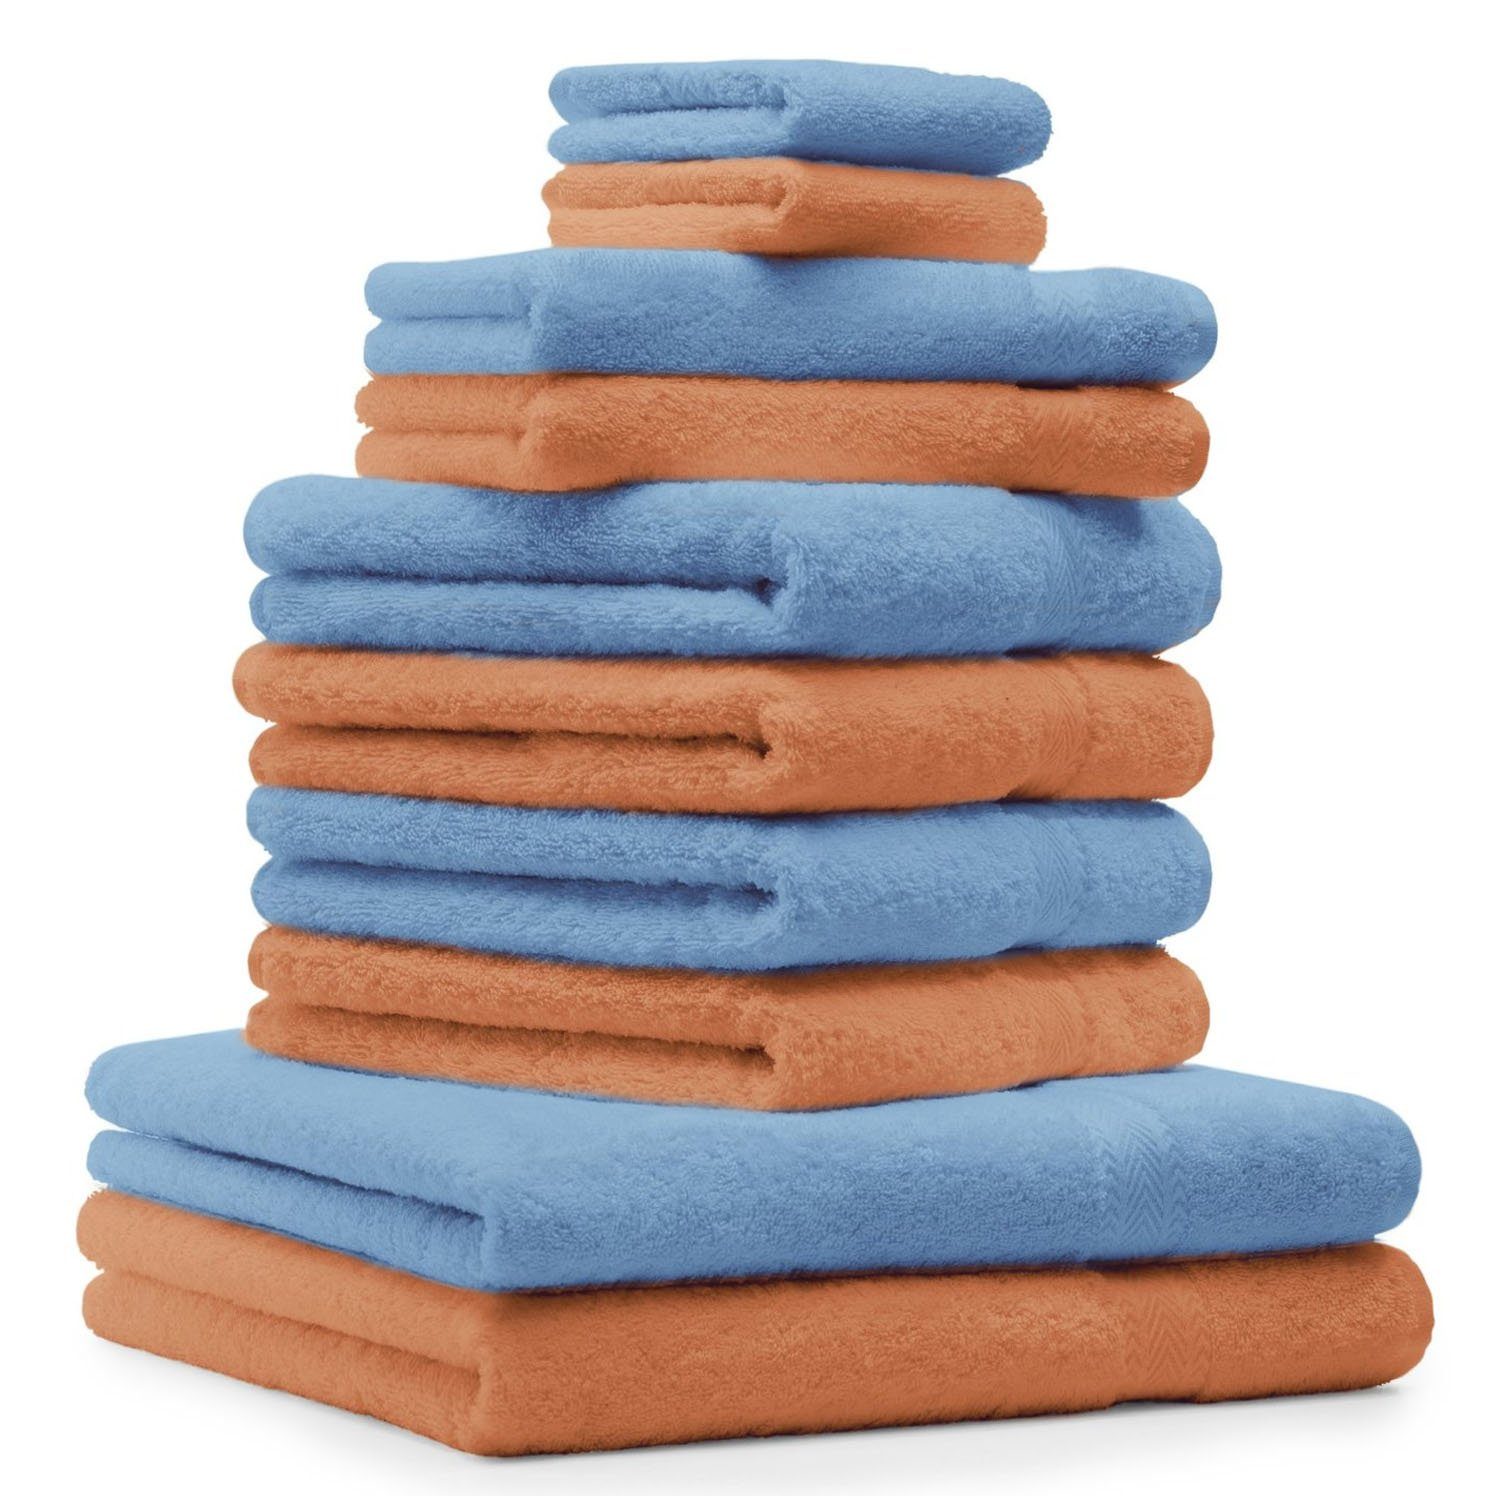 Betz Handtuch Set 10-TLG. Handtuch-Set Classic Farbe orange und hellblau, 100% Baumwolle